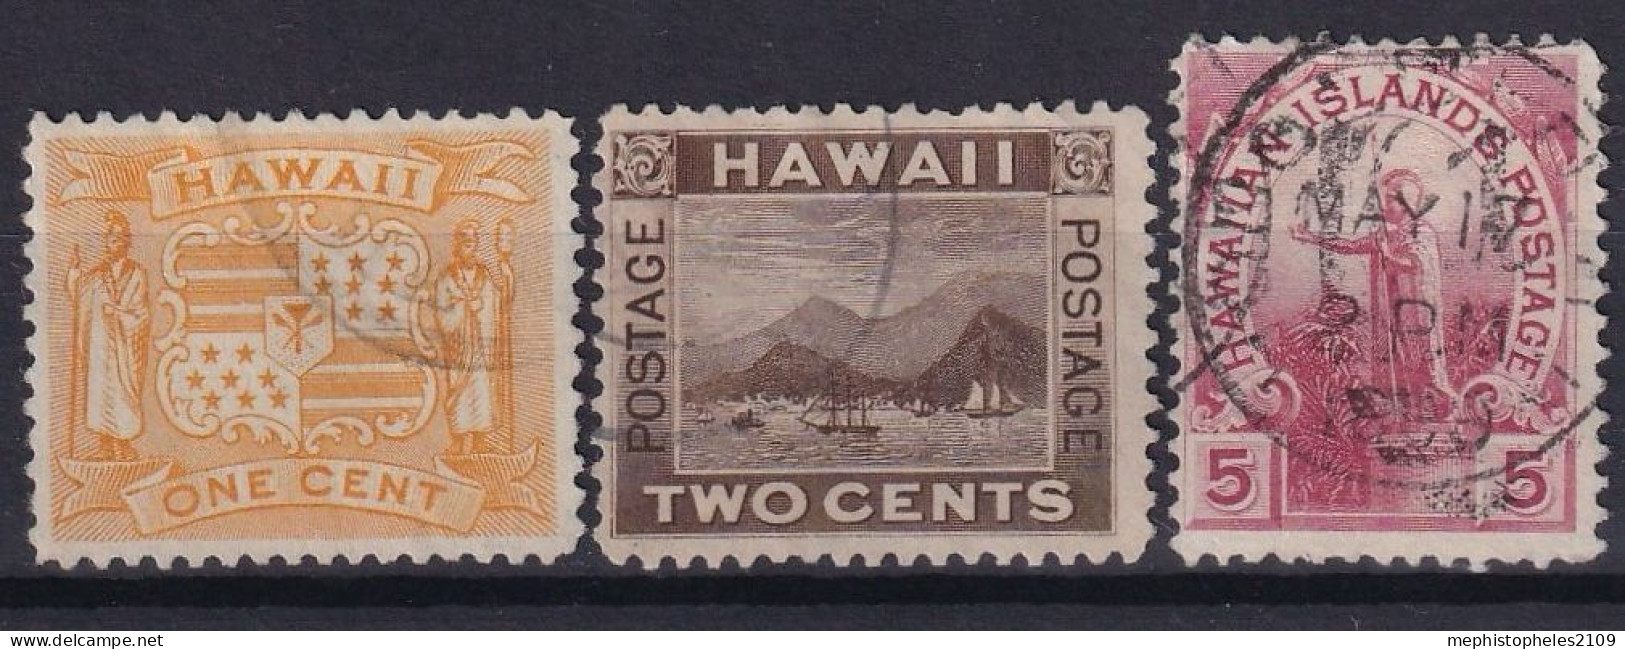 HAWAII 1894 - Canceled - Sc# 74-76 - Hawaii